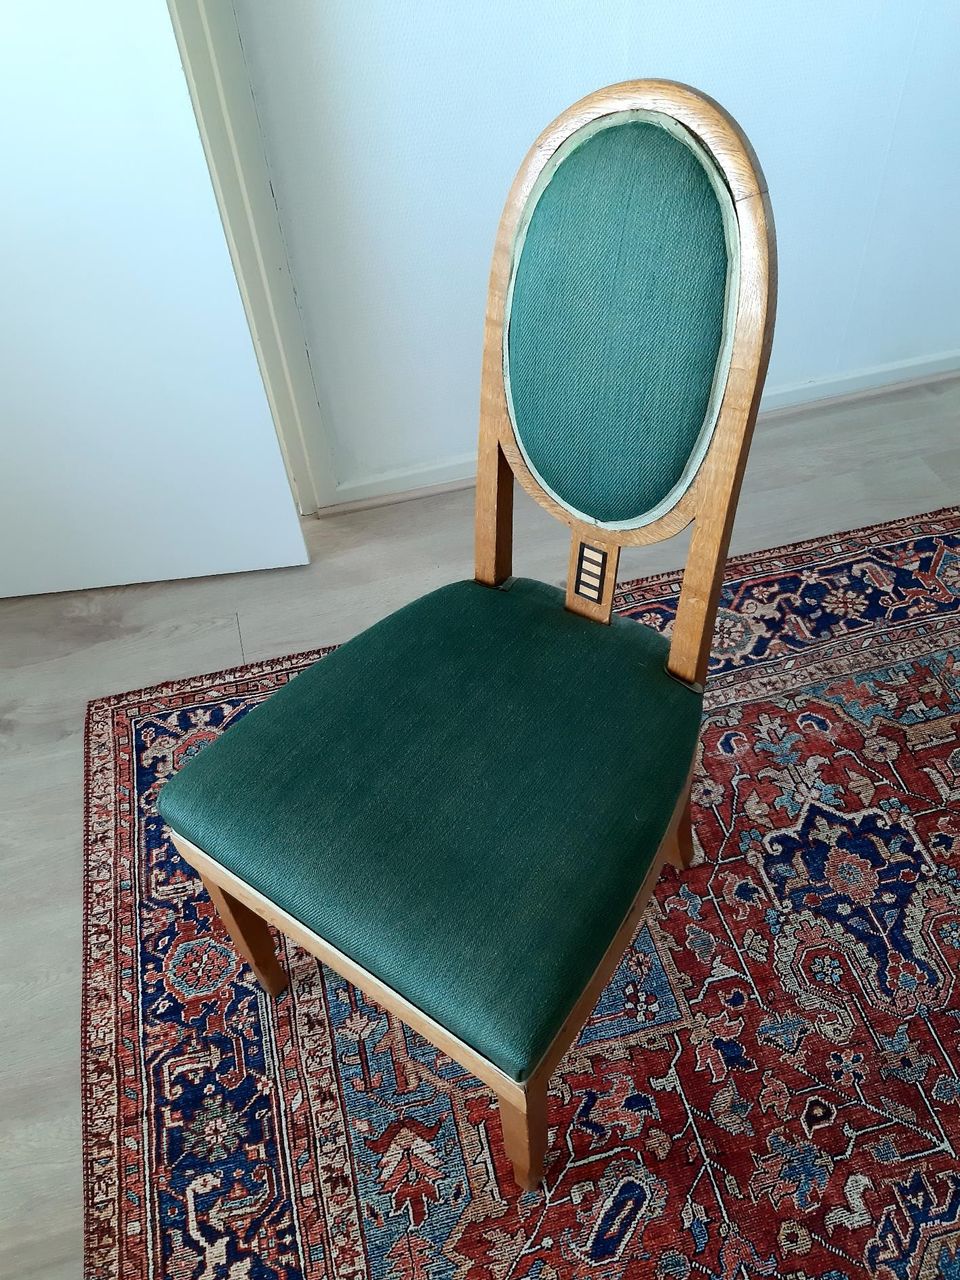 Jugend-tuoli